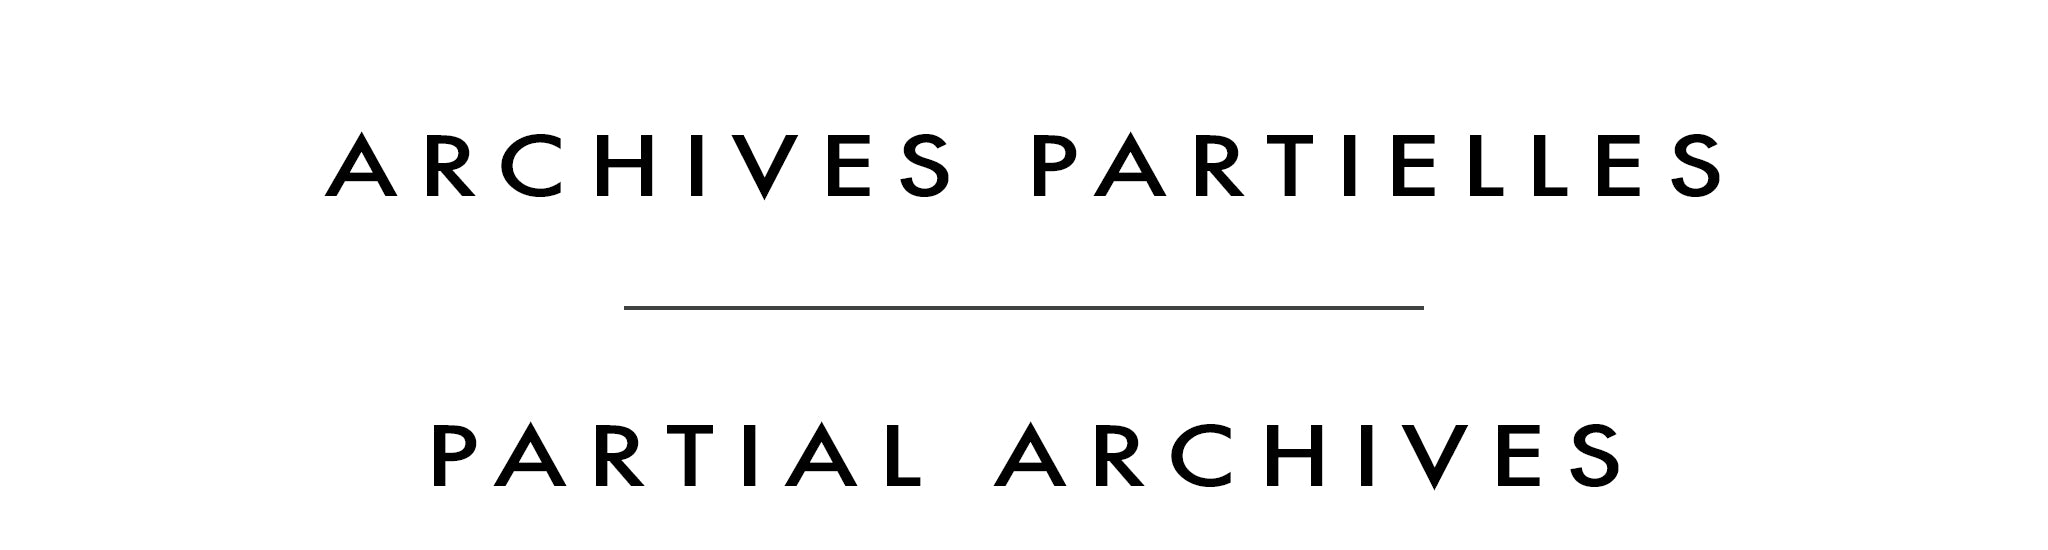 Archives partielles | Partial Archives | Rick Bond